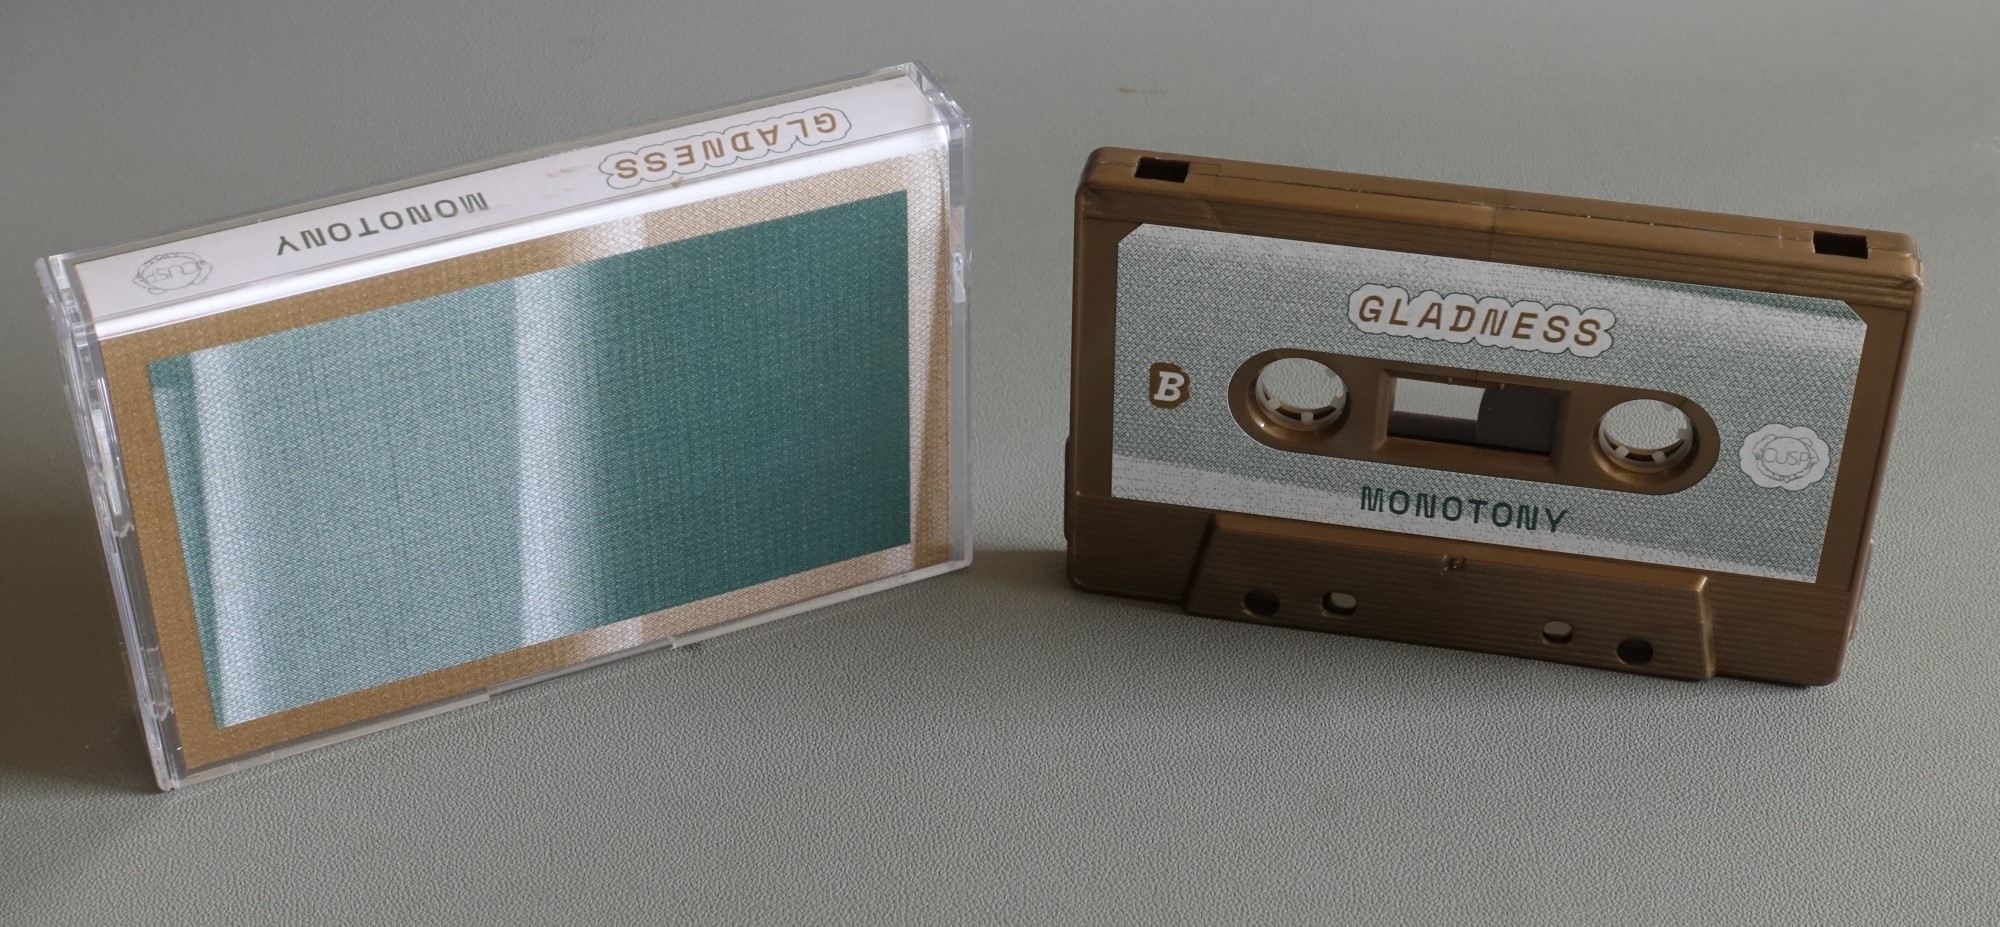 Gladness cassette